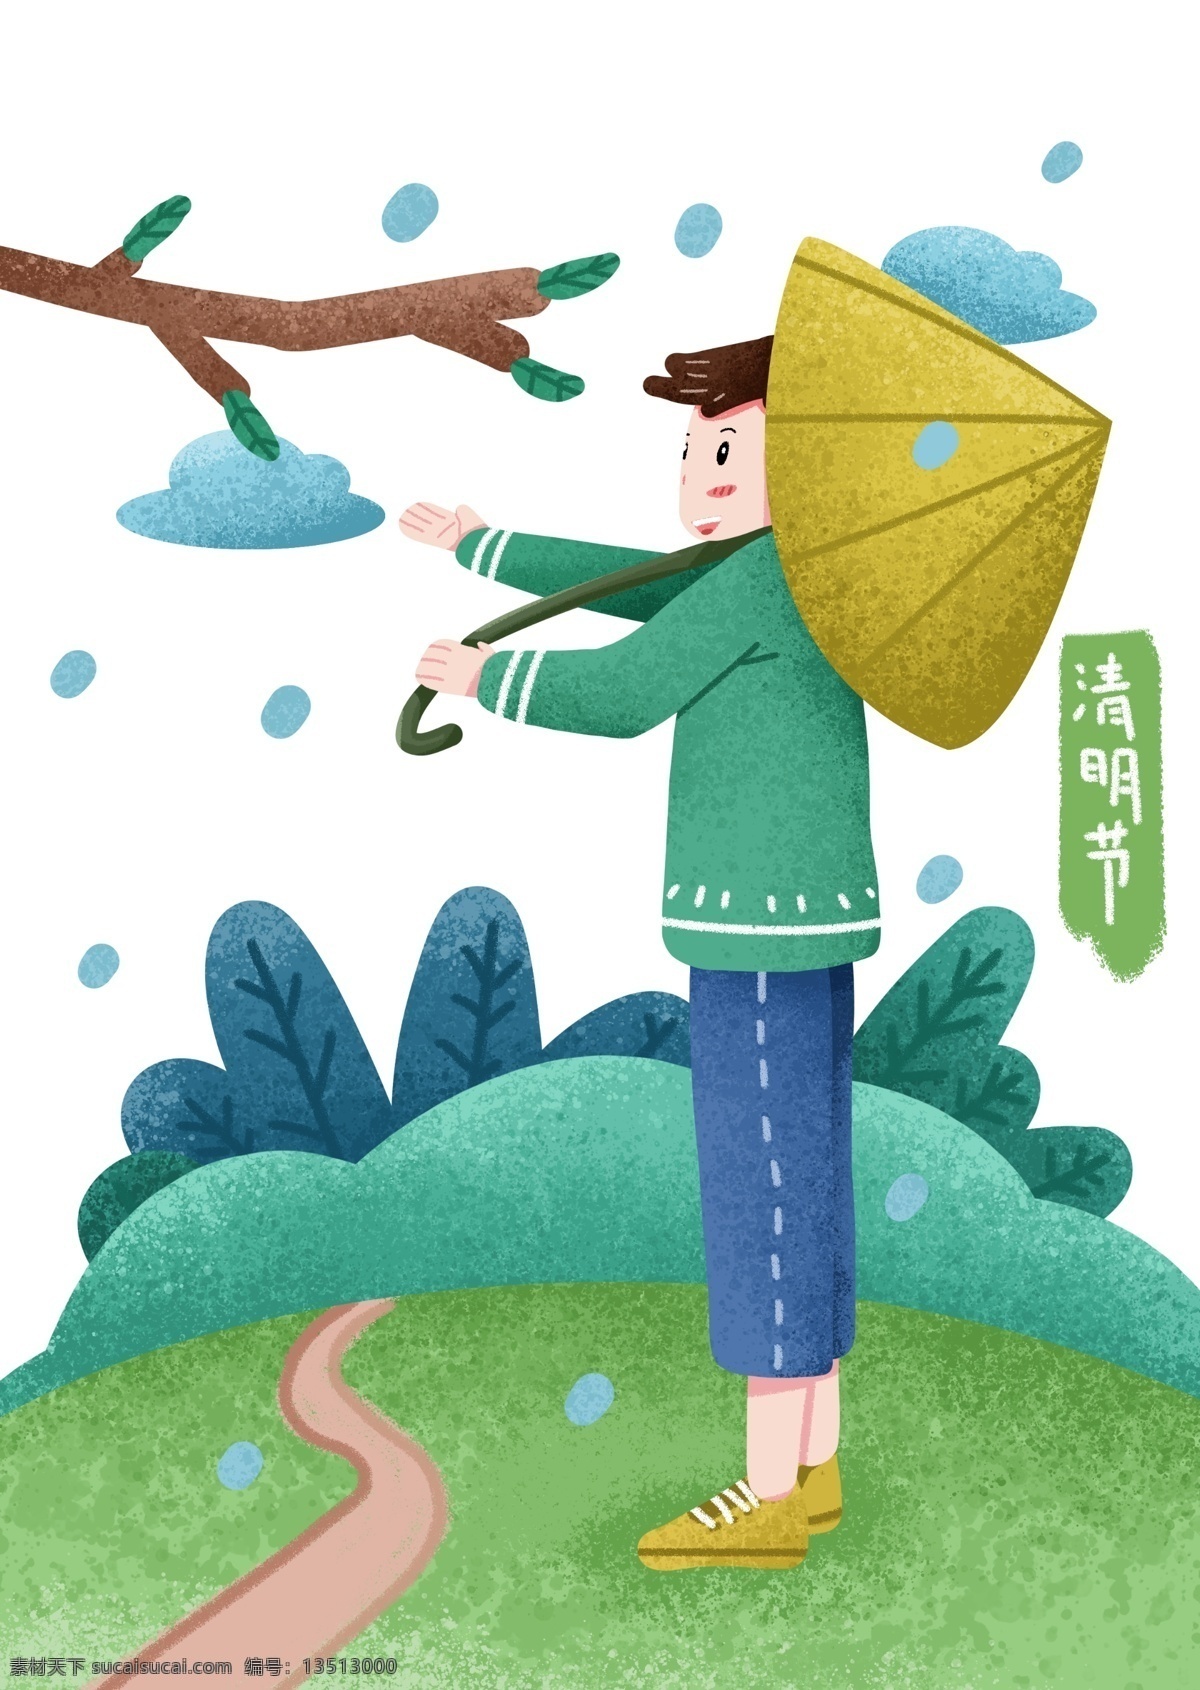 清明节 打伞 小 男孩 人物 插画 打伞的小男孩 黄色的雨伞 蓝色的雨滴 绿色的叶子 植物装饰